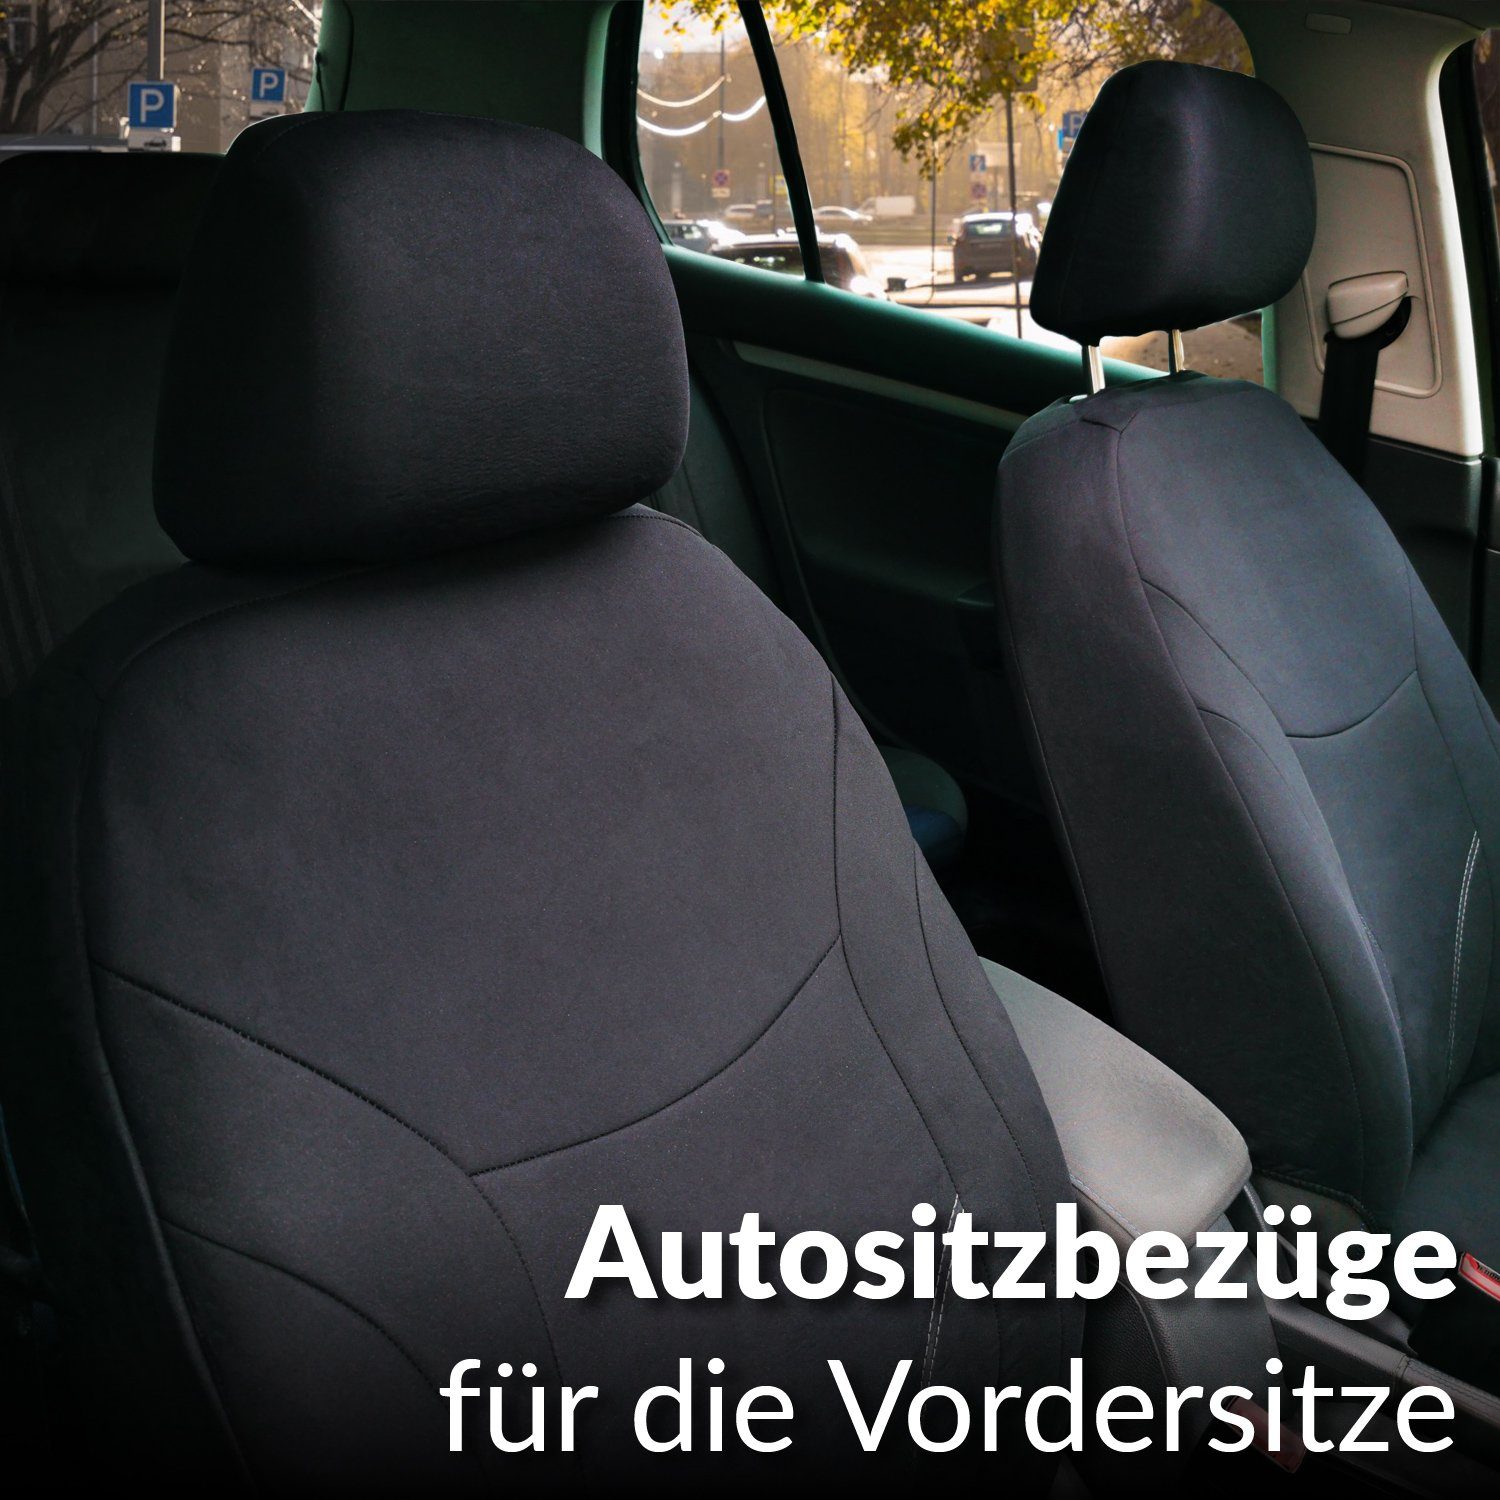 Upgrade4cars Auto-Sitzbezüge Vordersitze Rot Schwarz